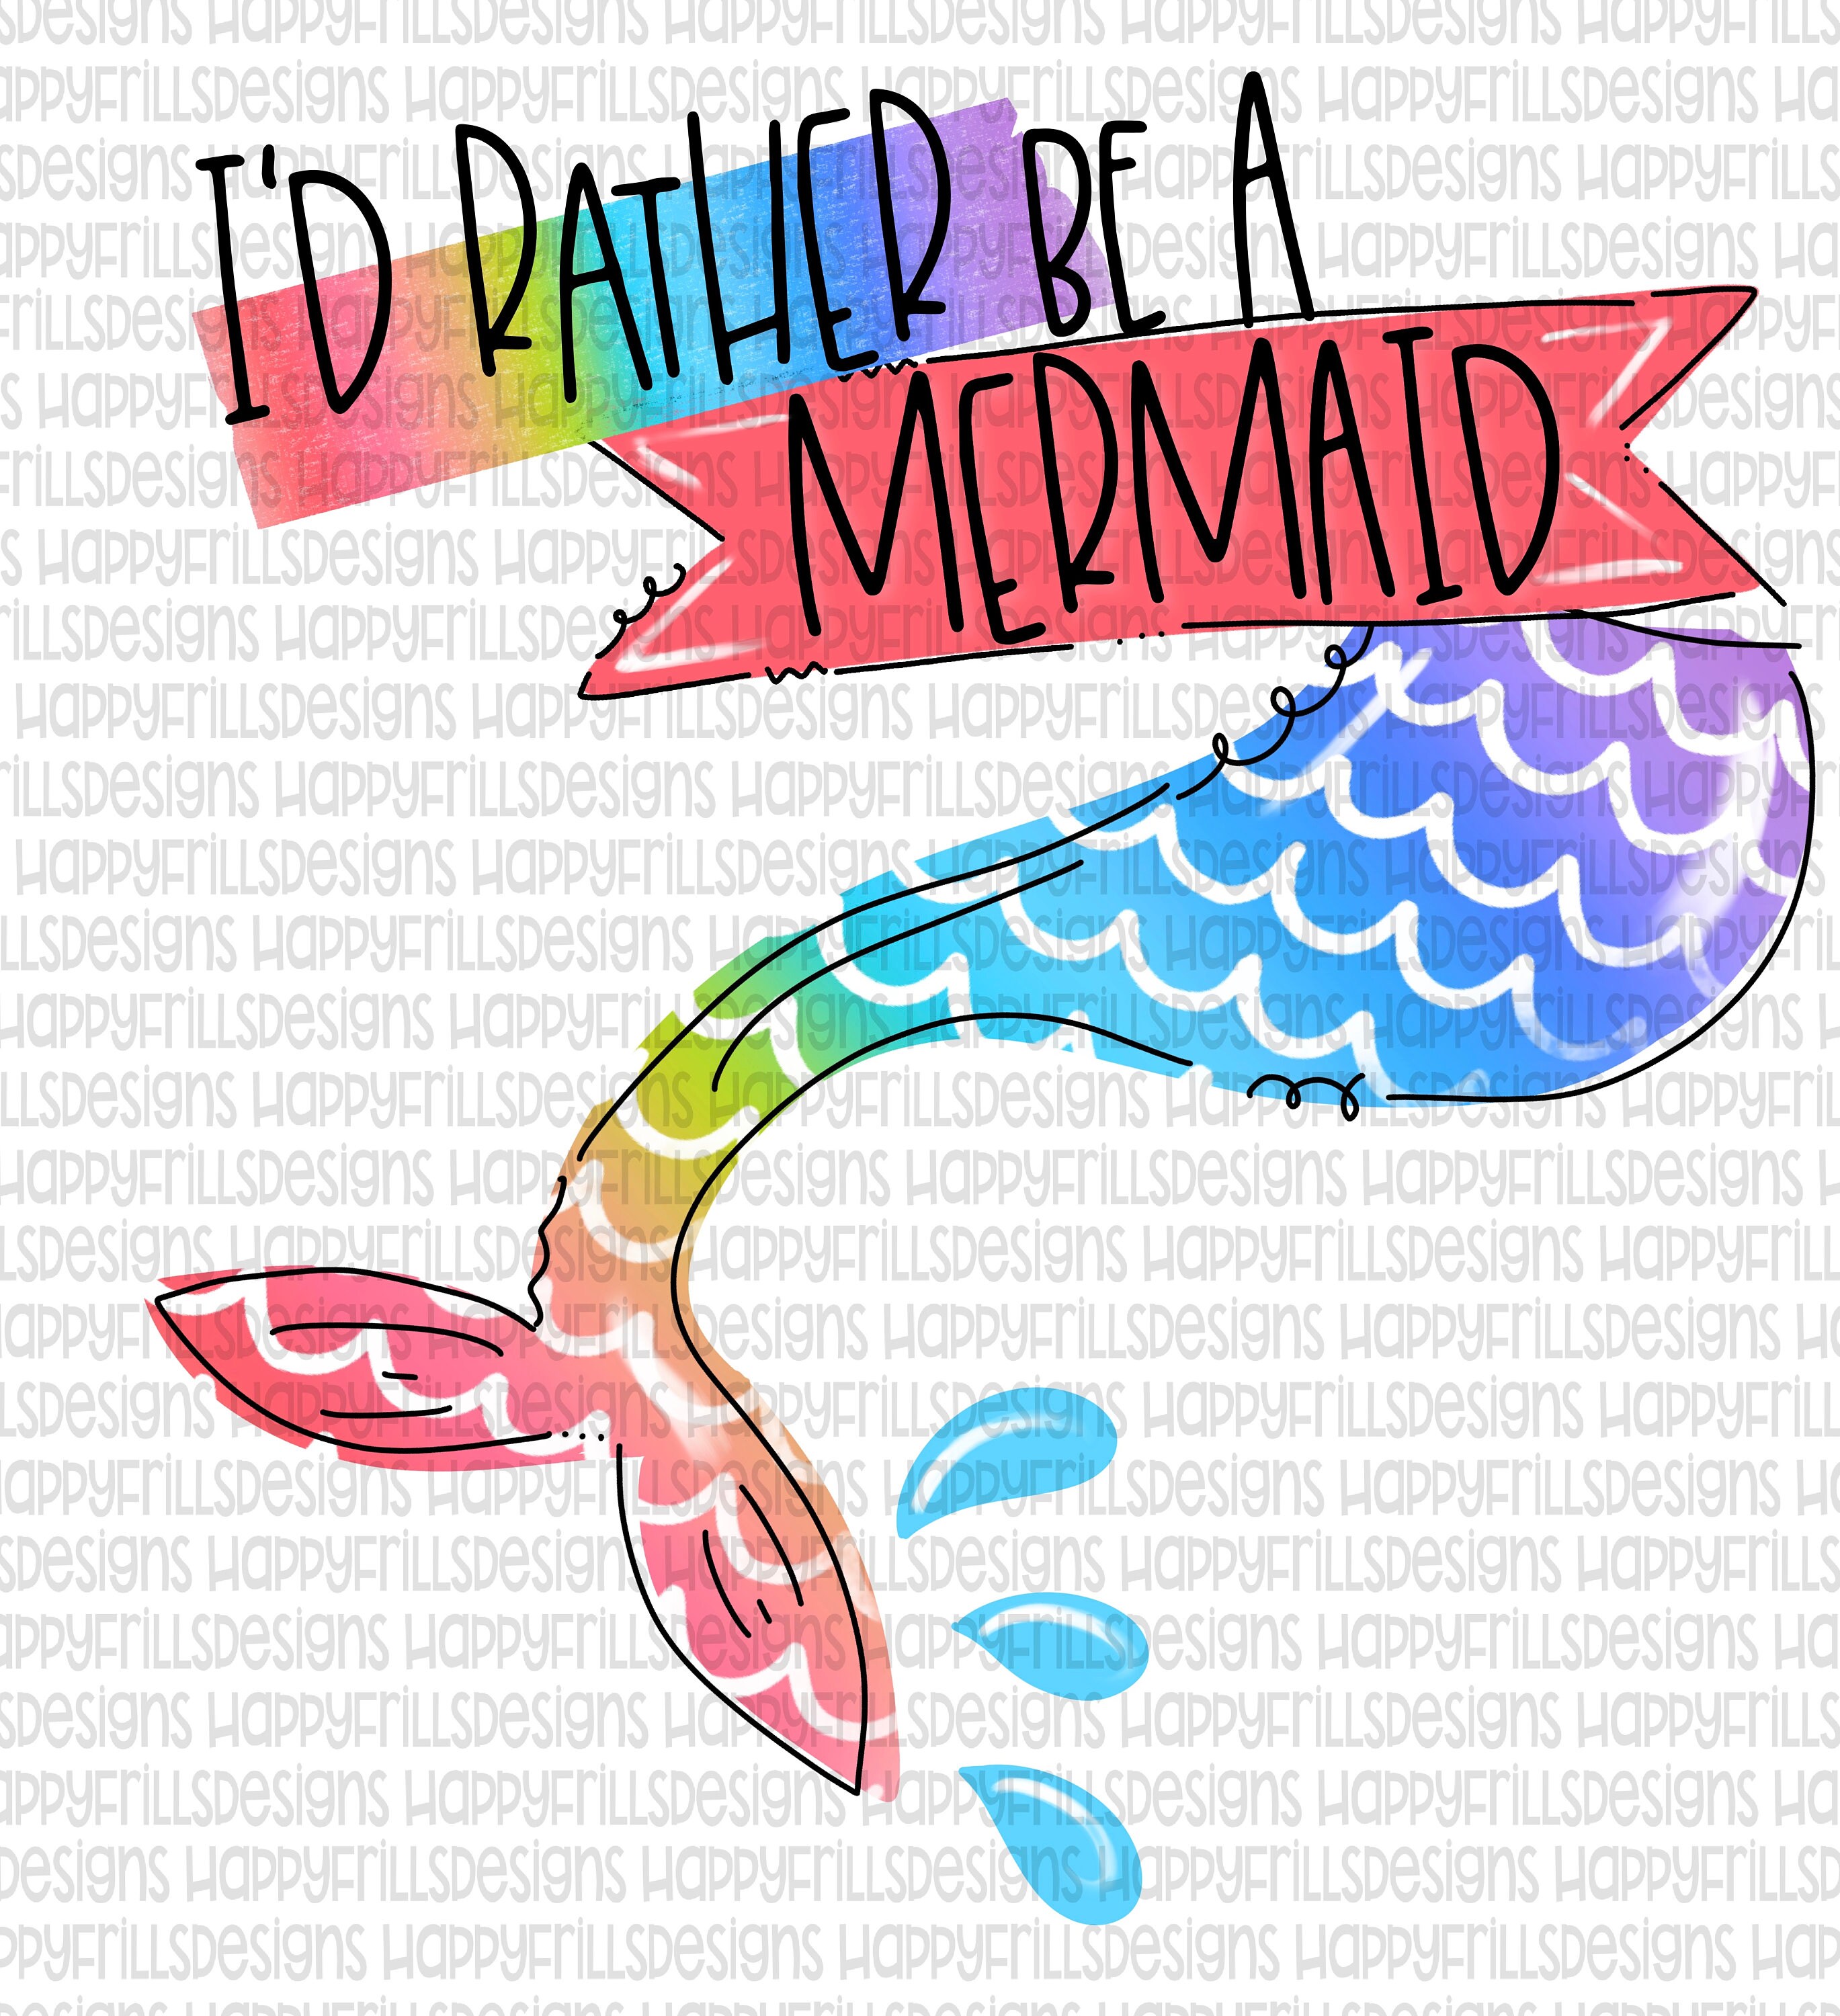 Download mermaid design Digital image png instant download for ...